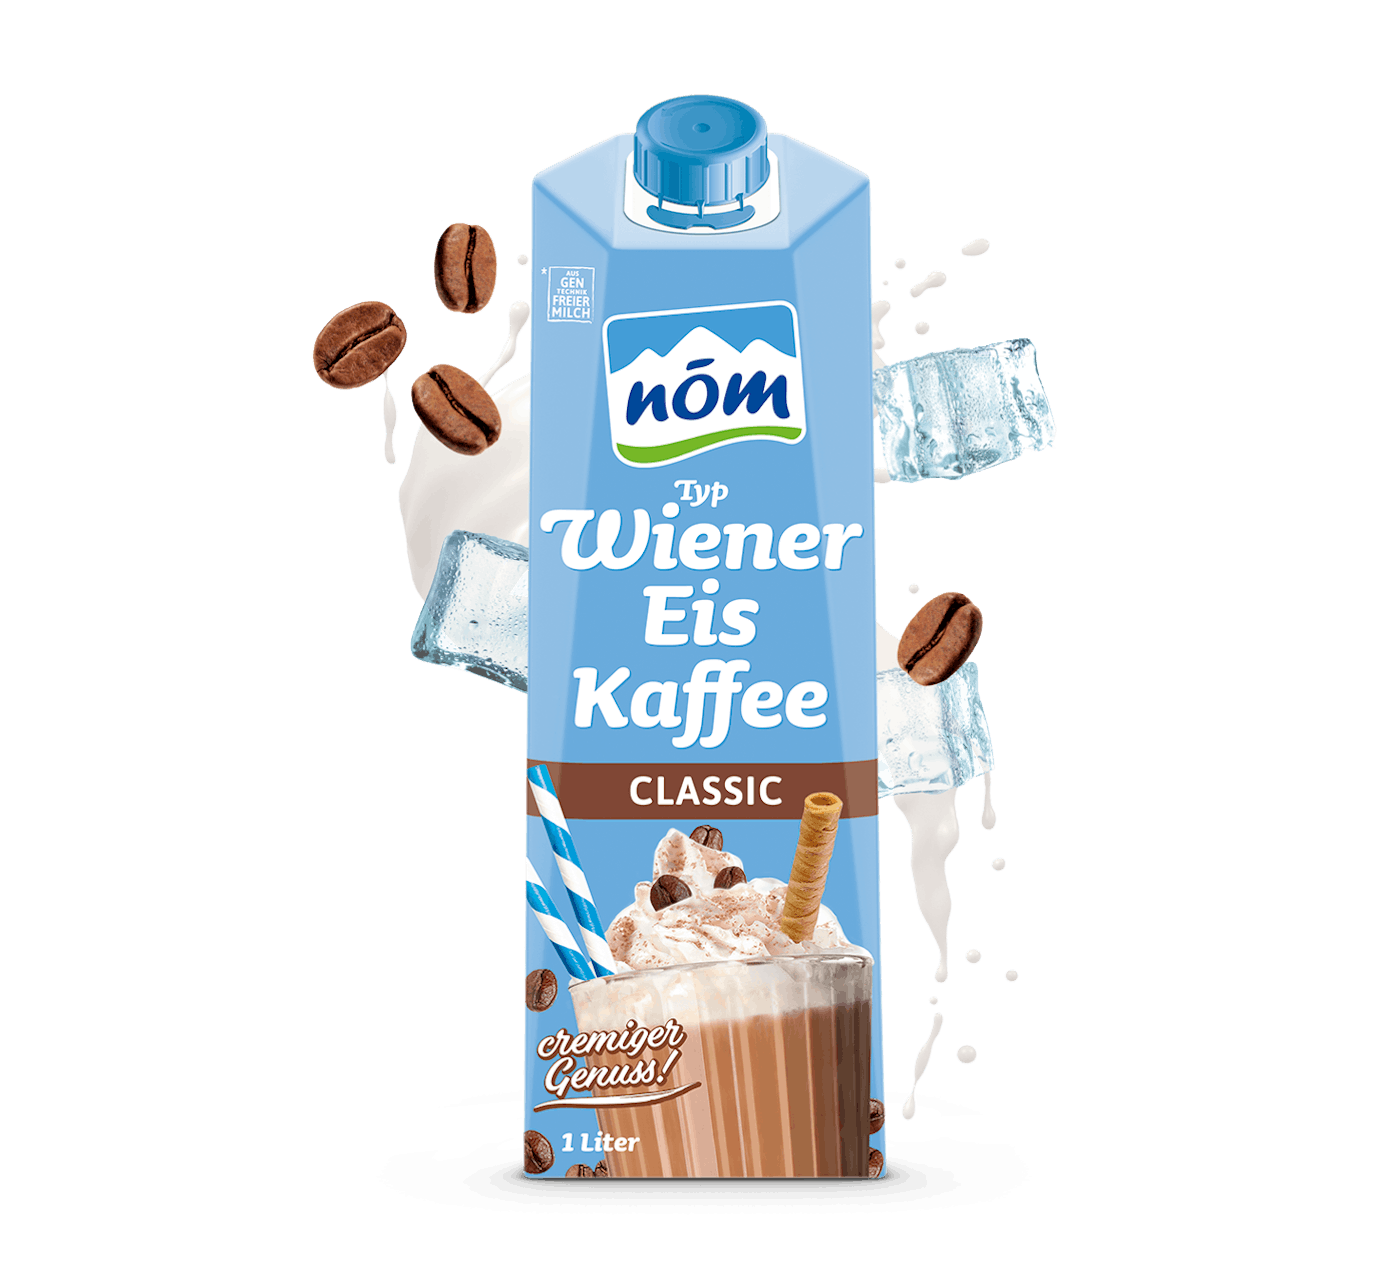 NÖM Wiener Eiskaffee Classic mit Kaffeebohnen